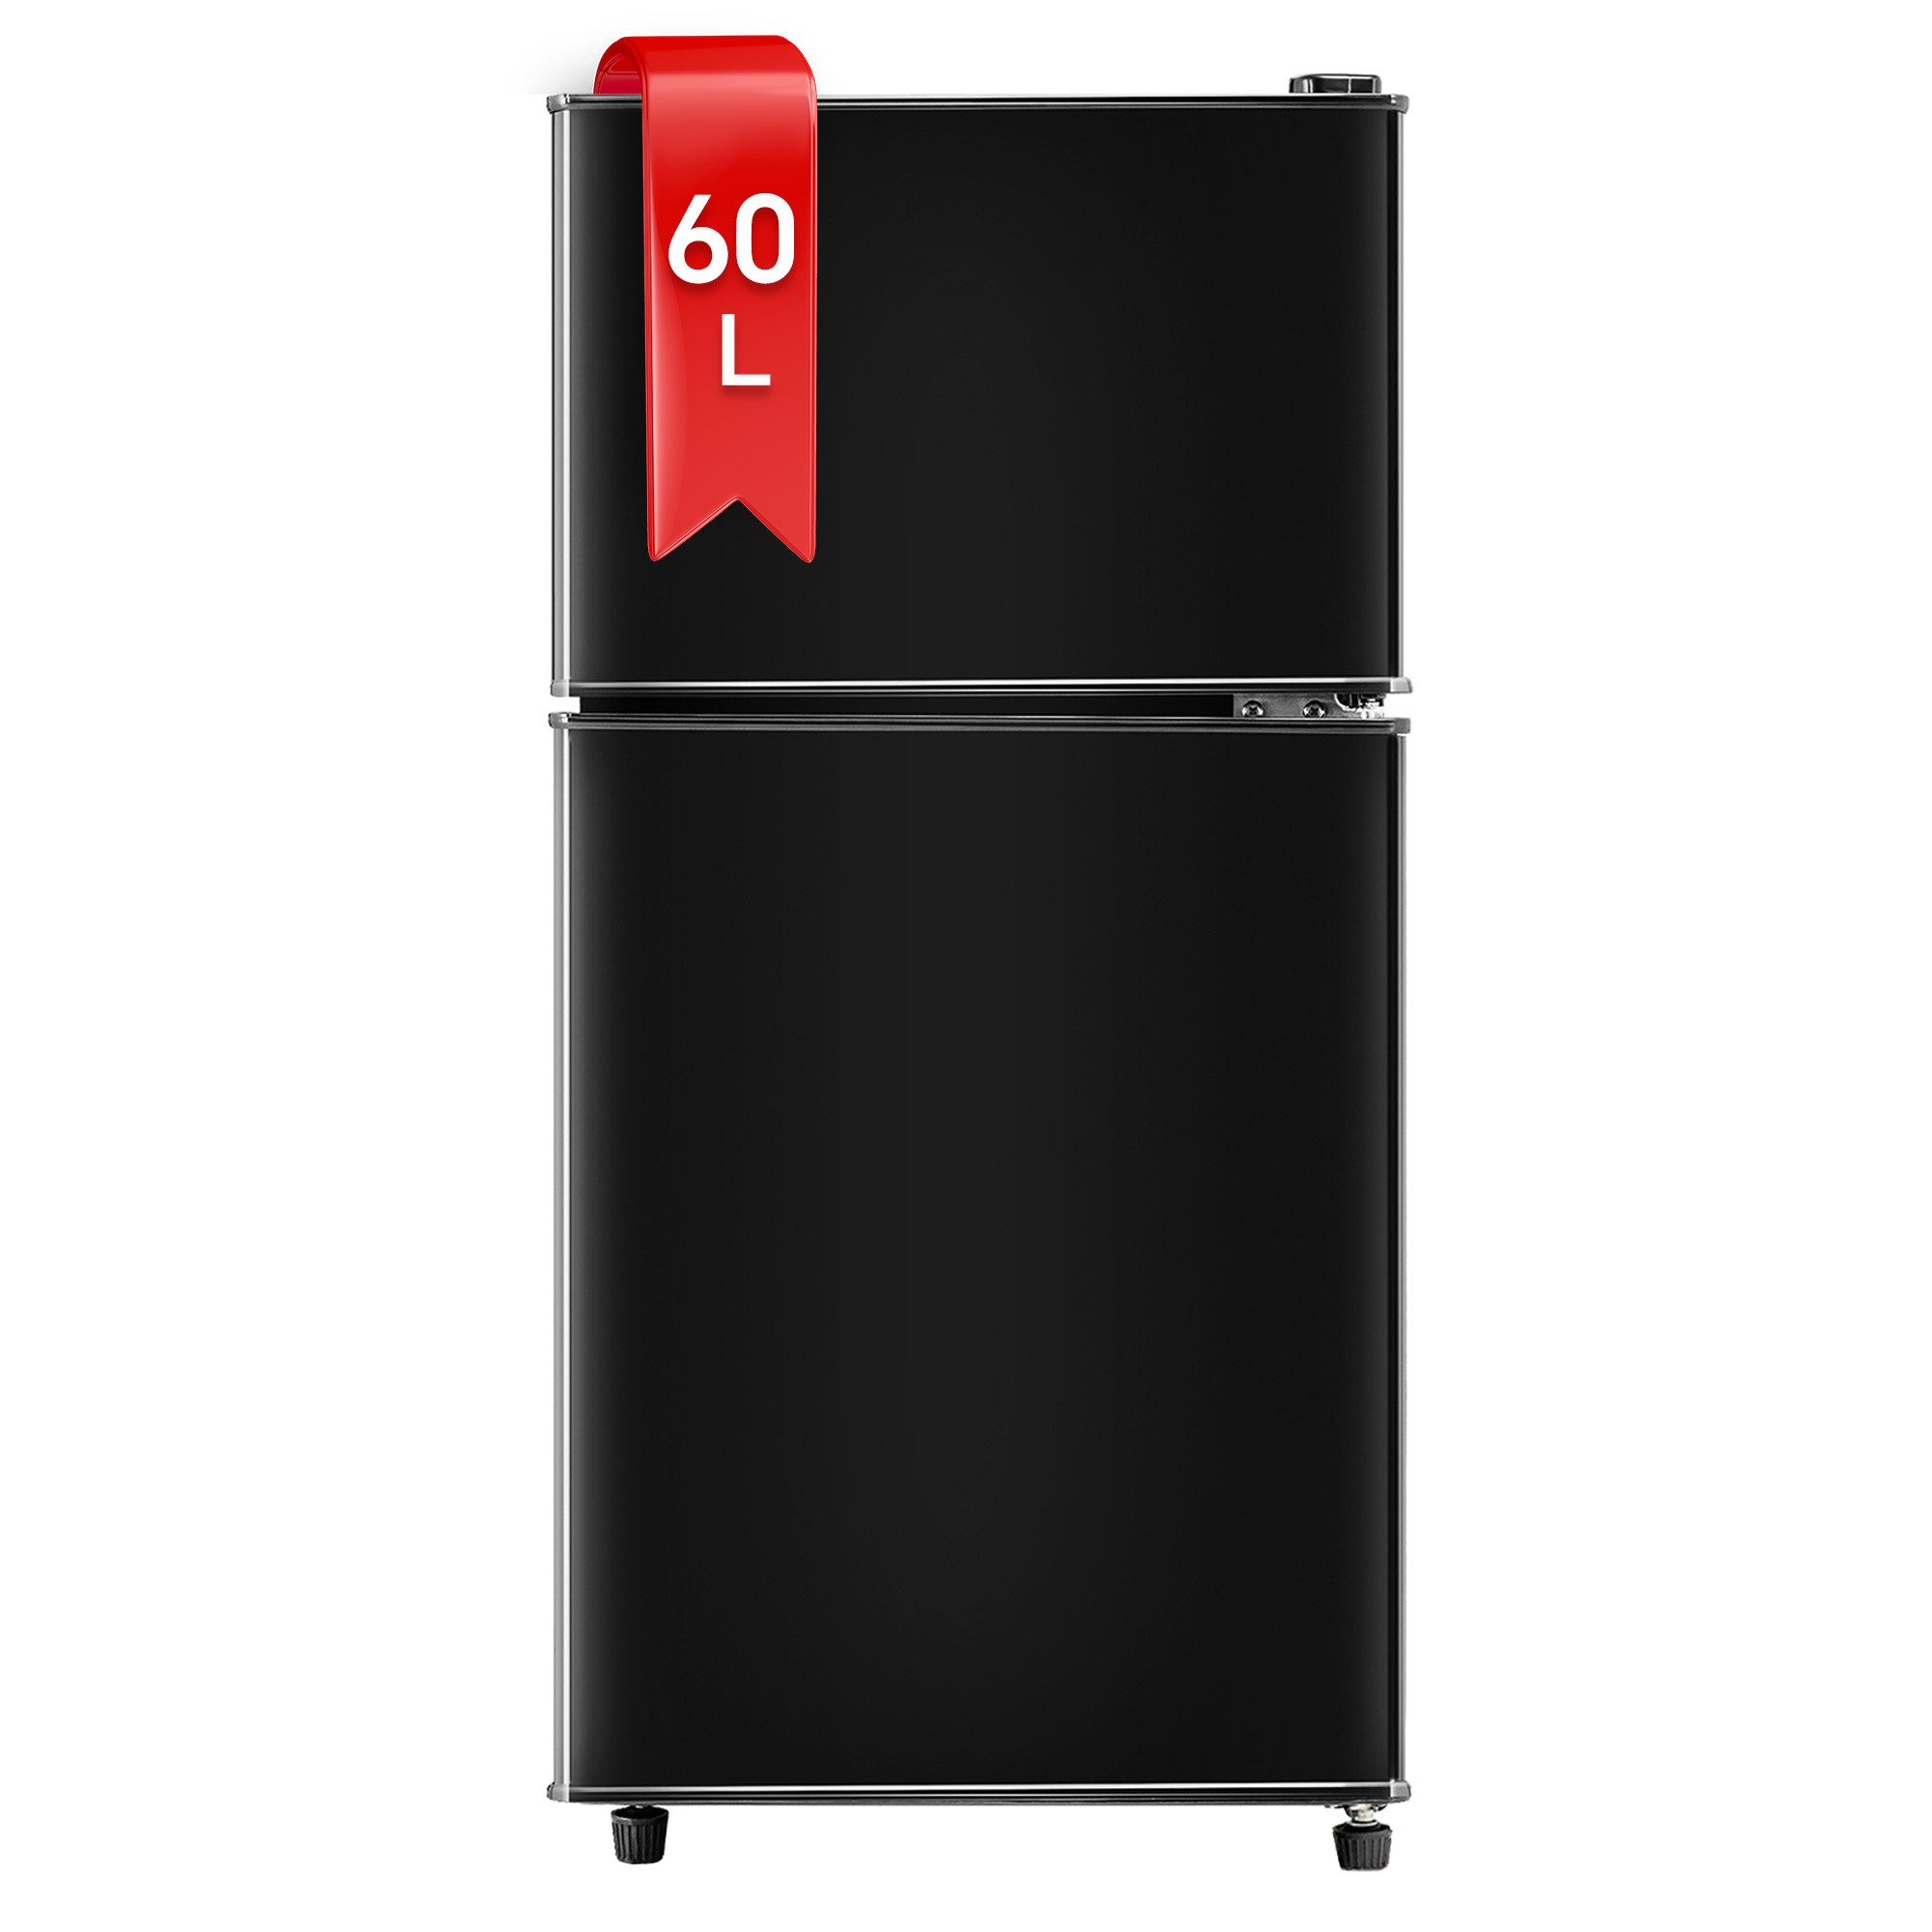 DRIXNO Table Top Kühlschrank BCD-86, 86.8 cm hoch, 42 cm breit, Leise, Jährlicher Energieverbrauch 172 kWh, F-Energieeffizienzklasse